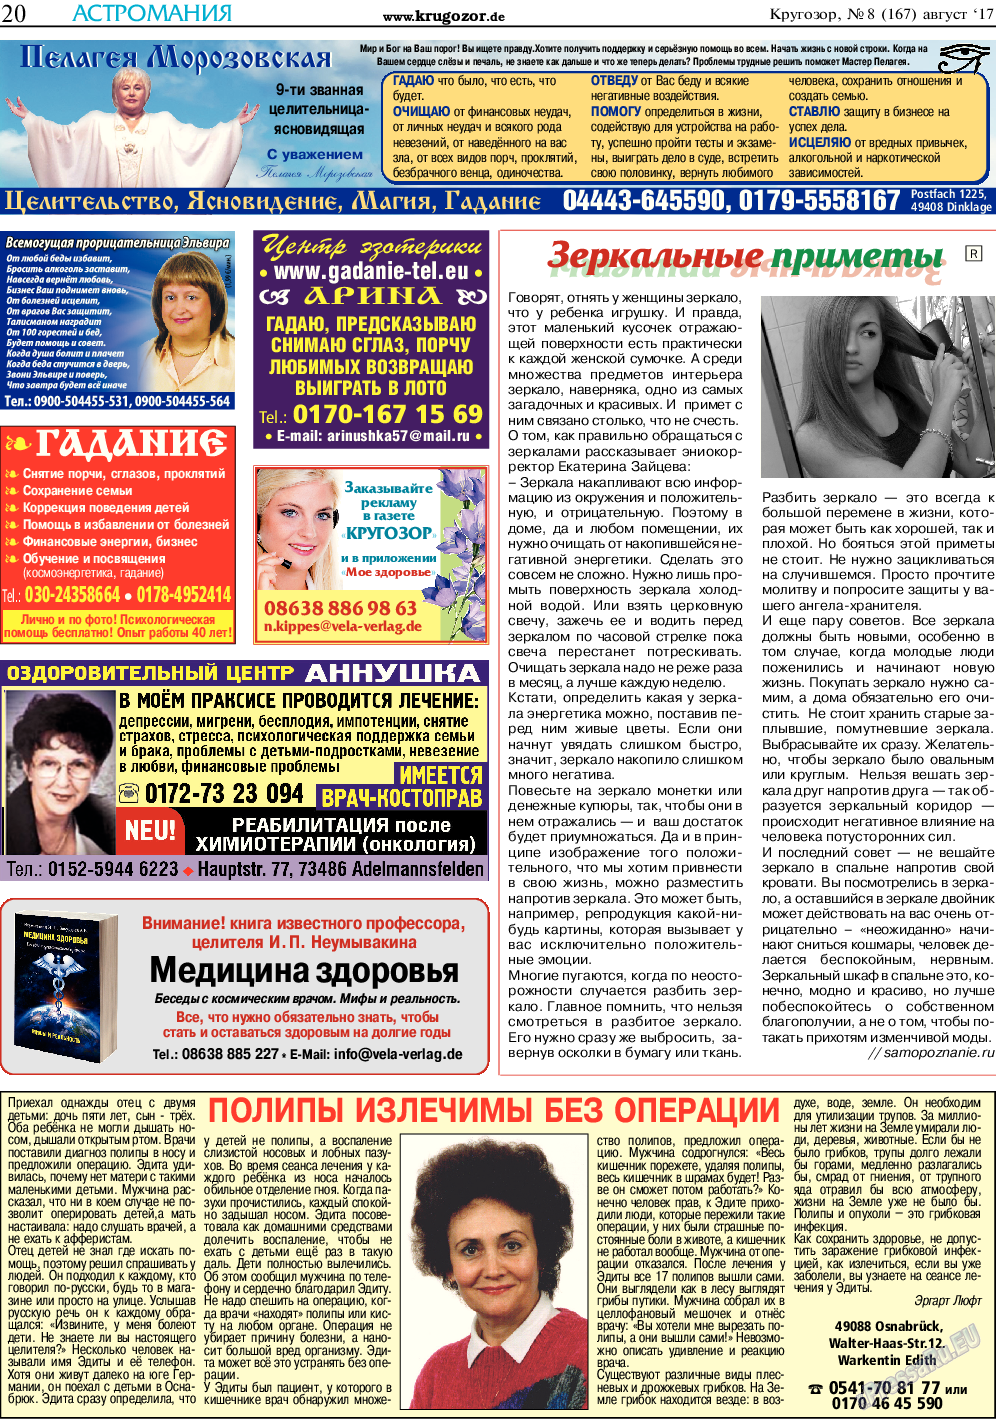 Кругозор, газета. 2017 №8 стр.20